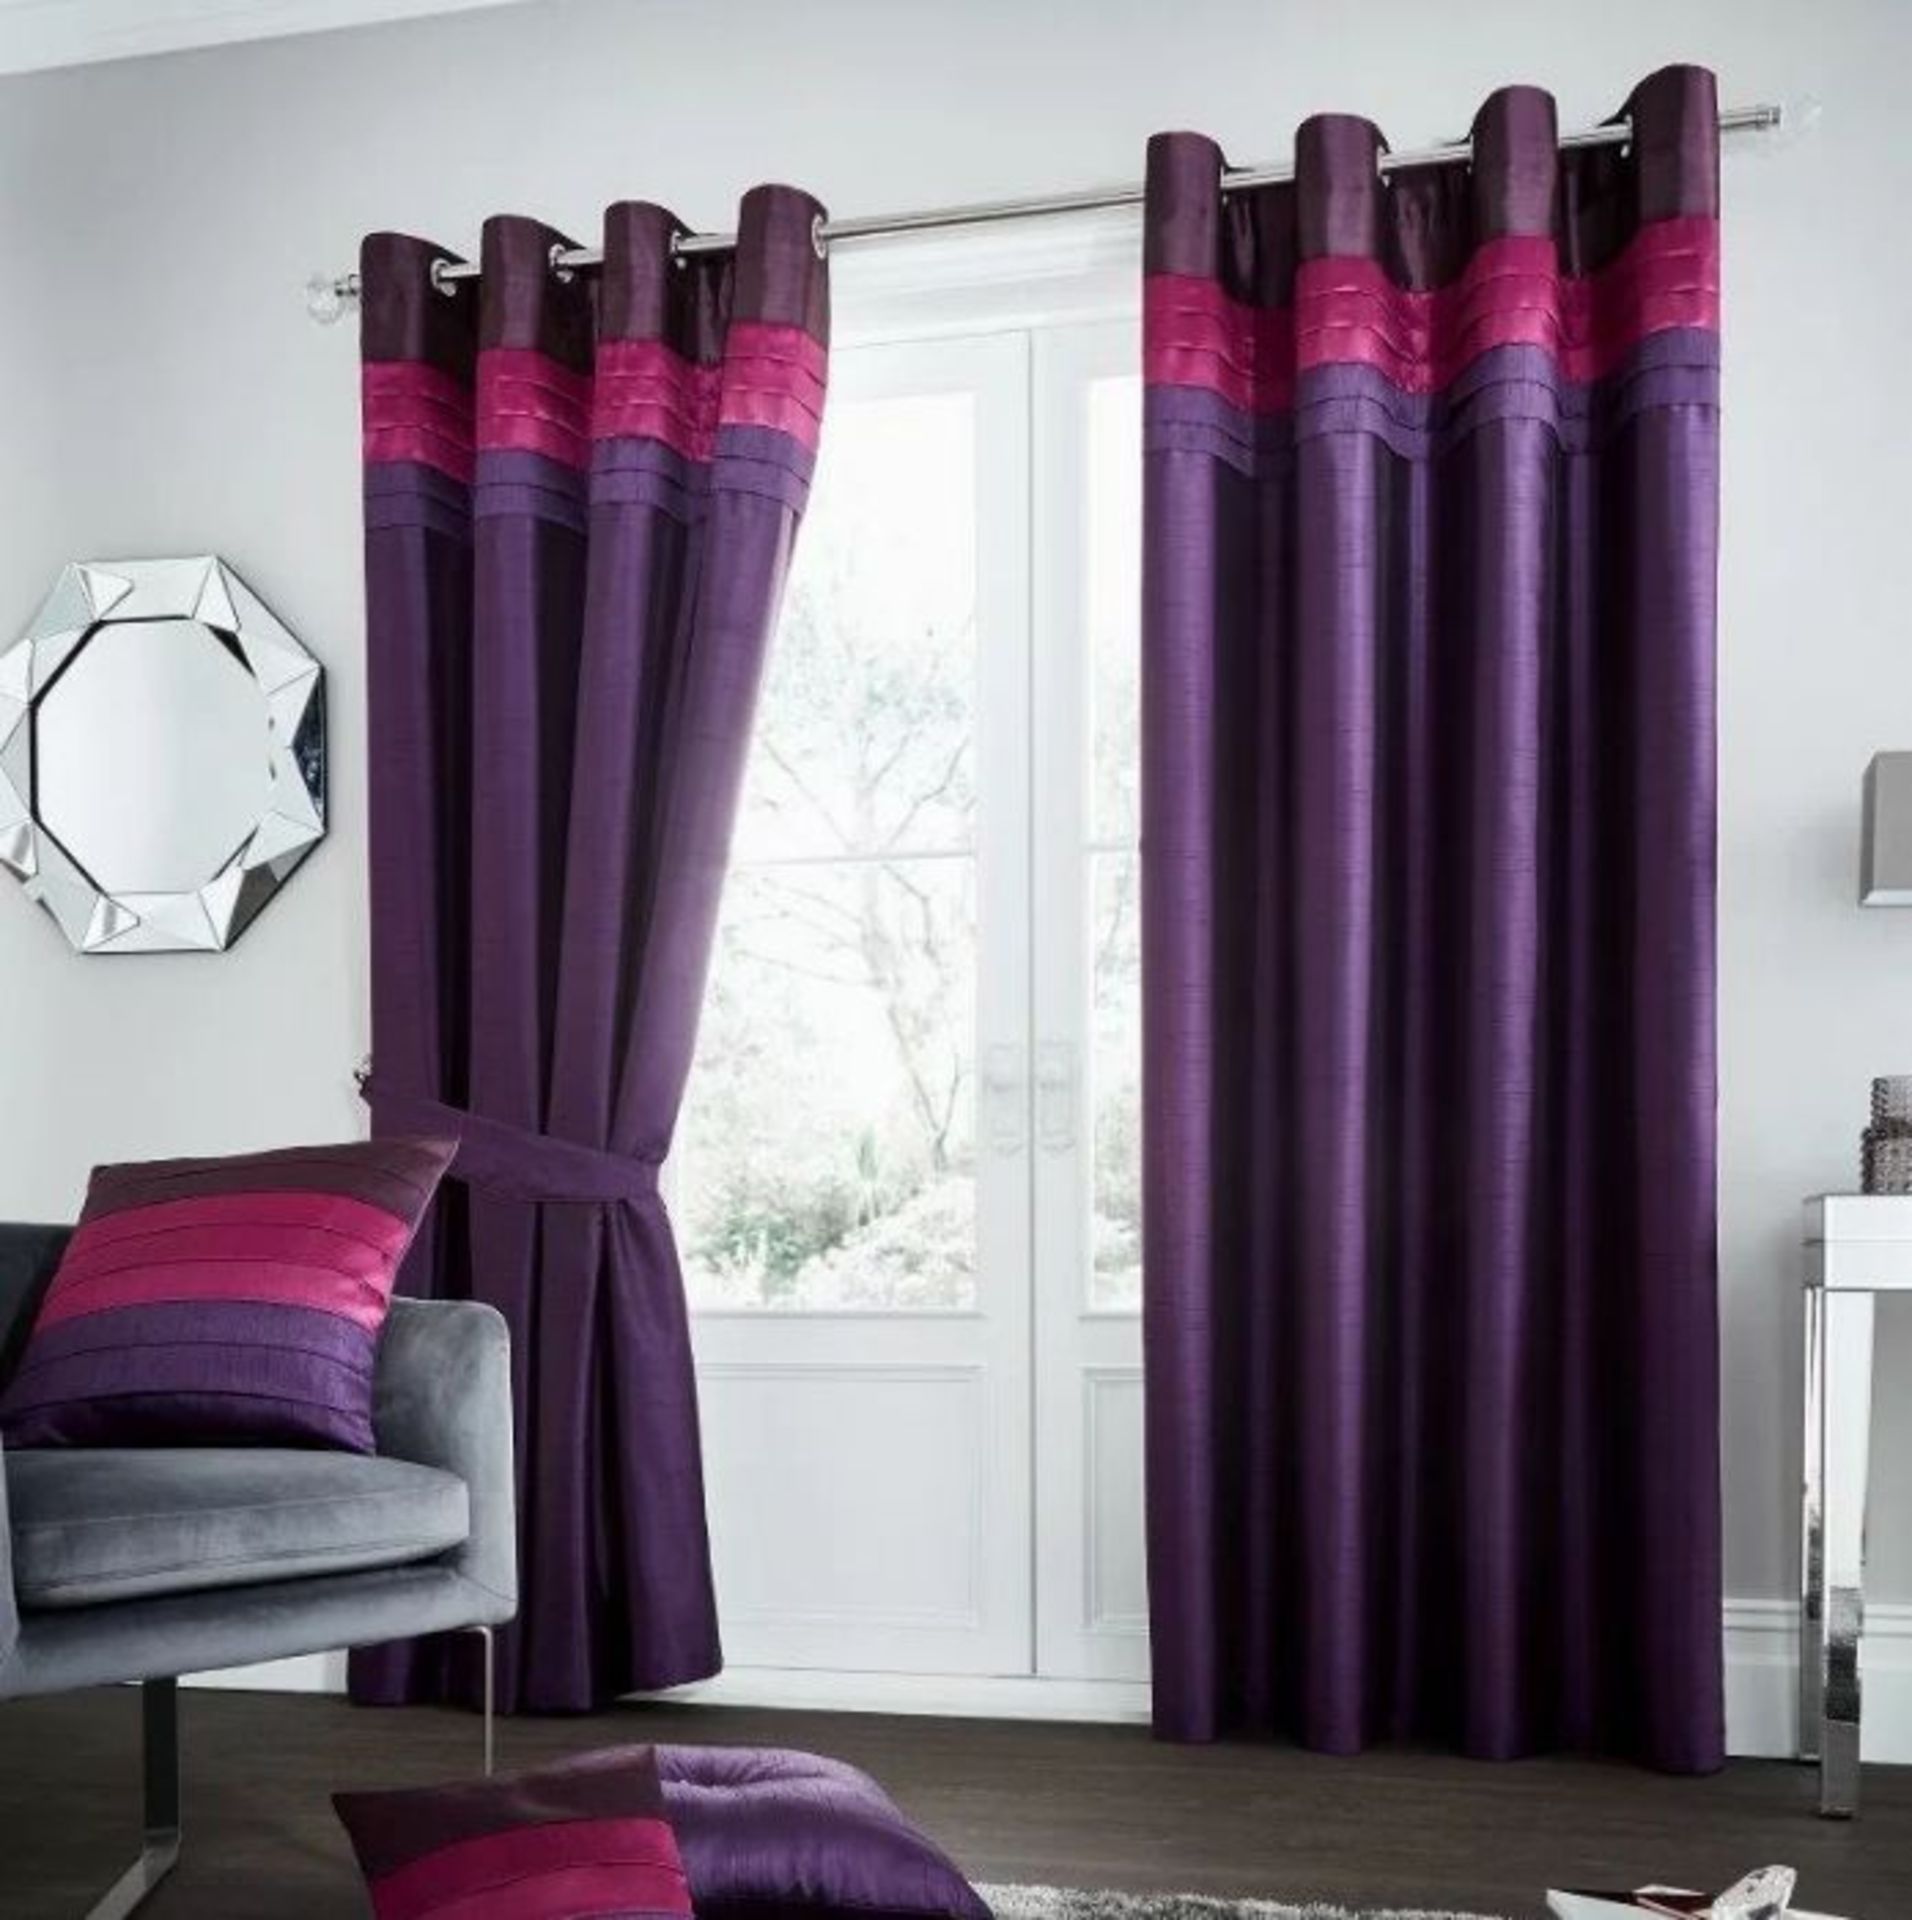 Brayden Studio, Geise Eyelet Room Darkening Curtains (PLUM) (167cm D x 183cm W) - RRP £32.99 (GAVC19